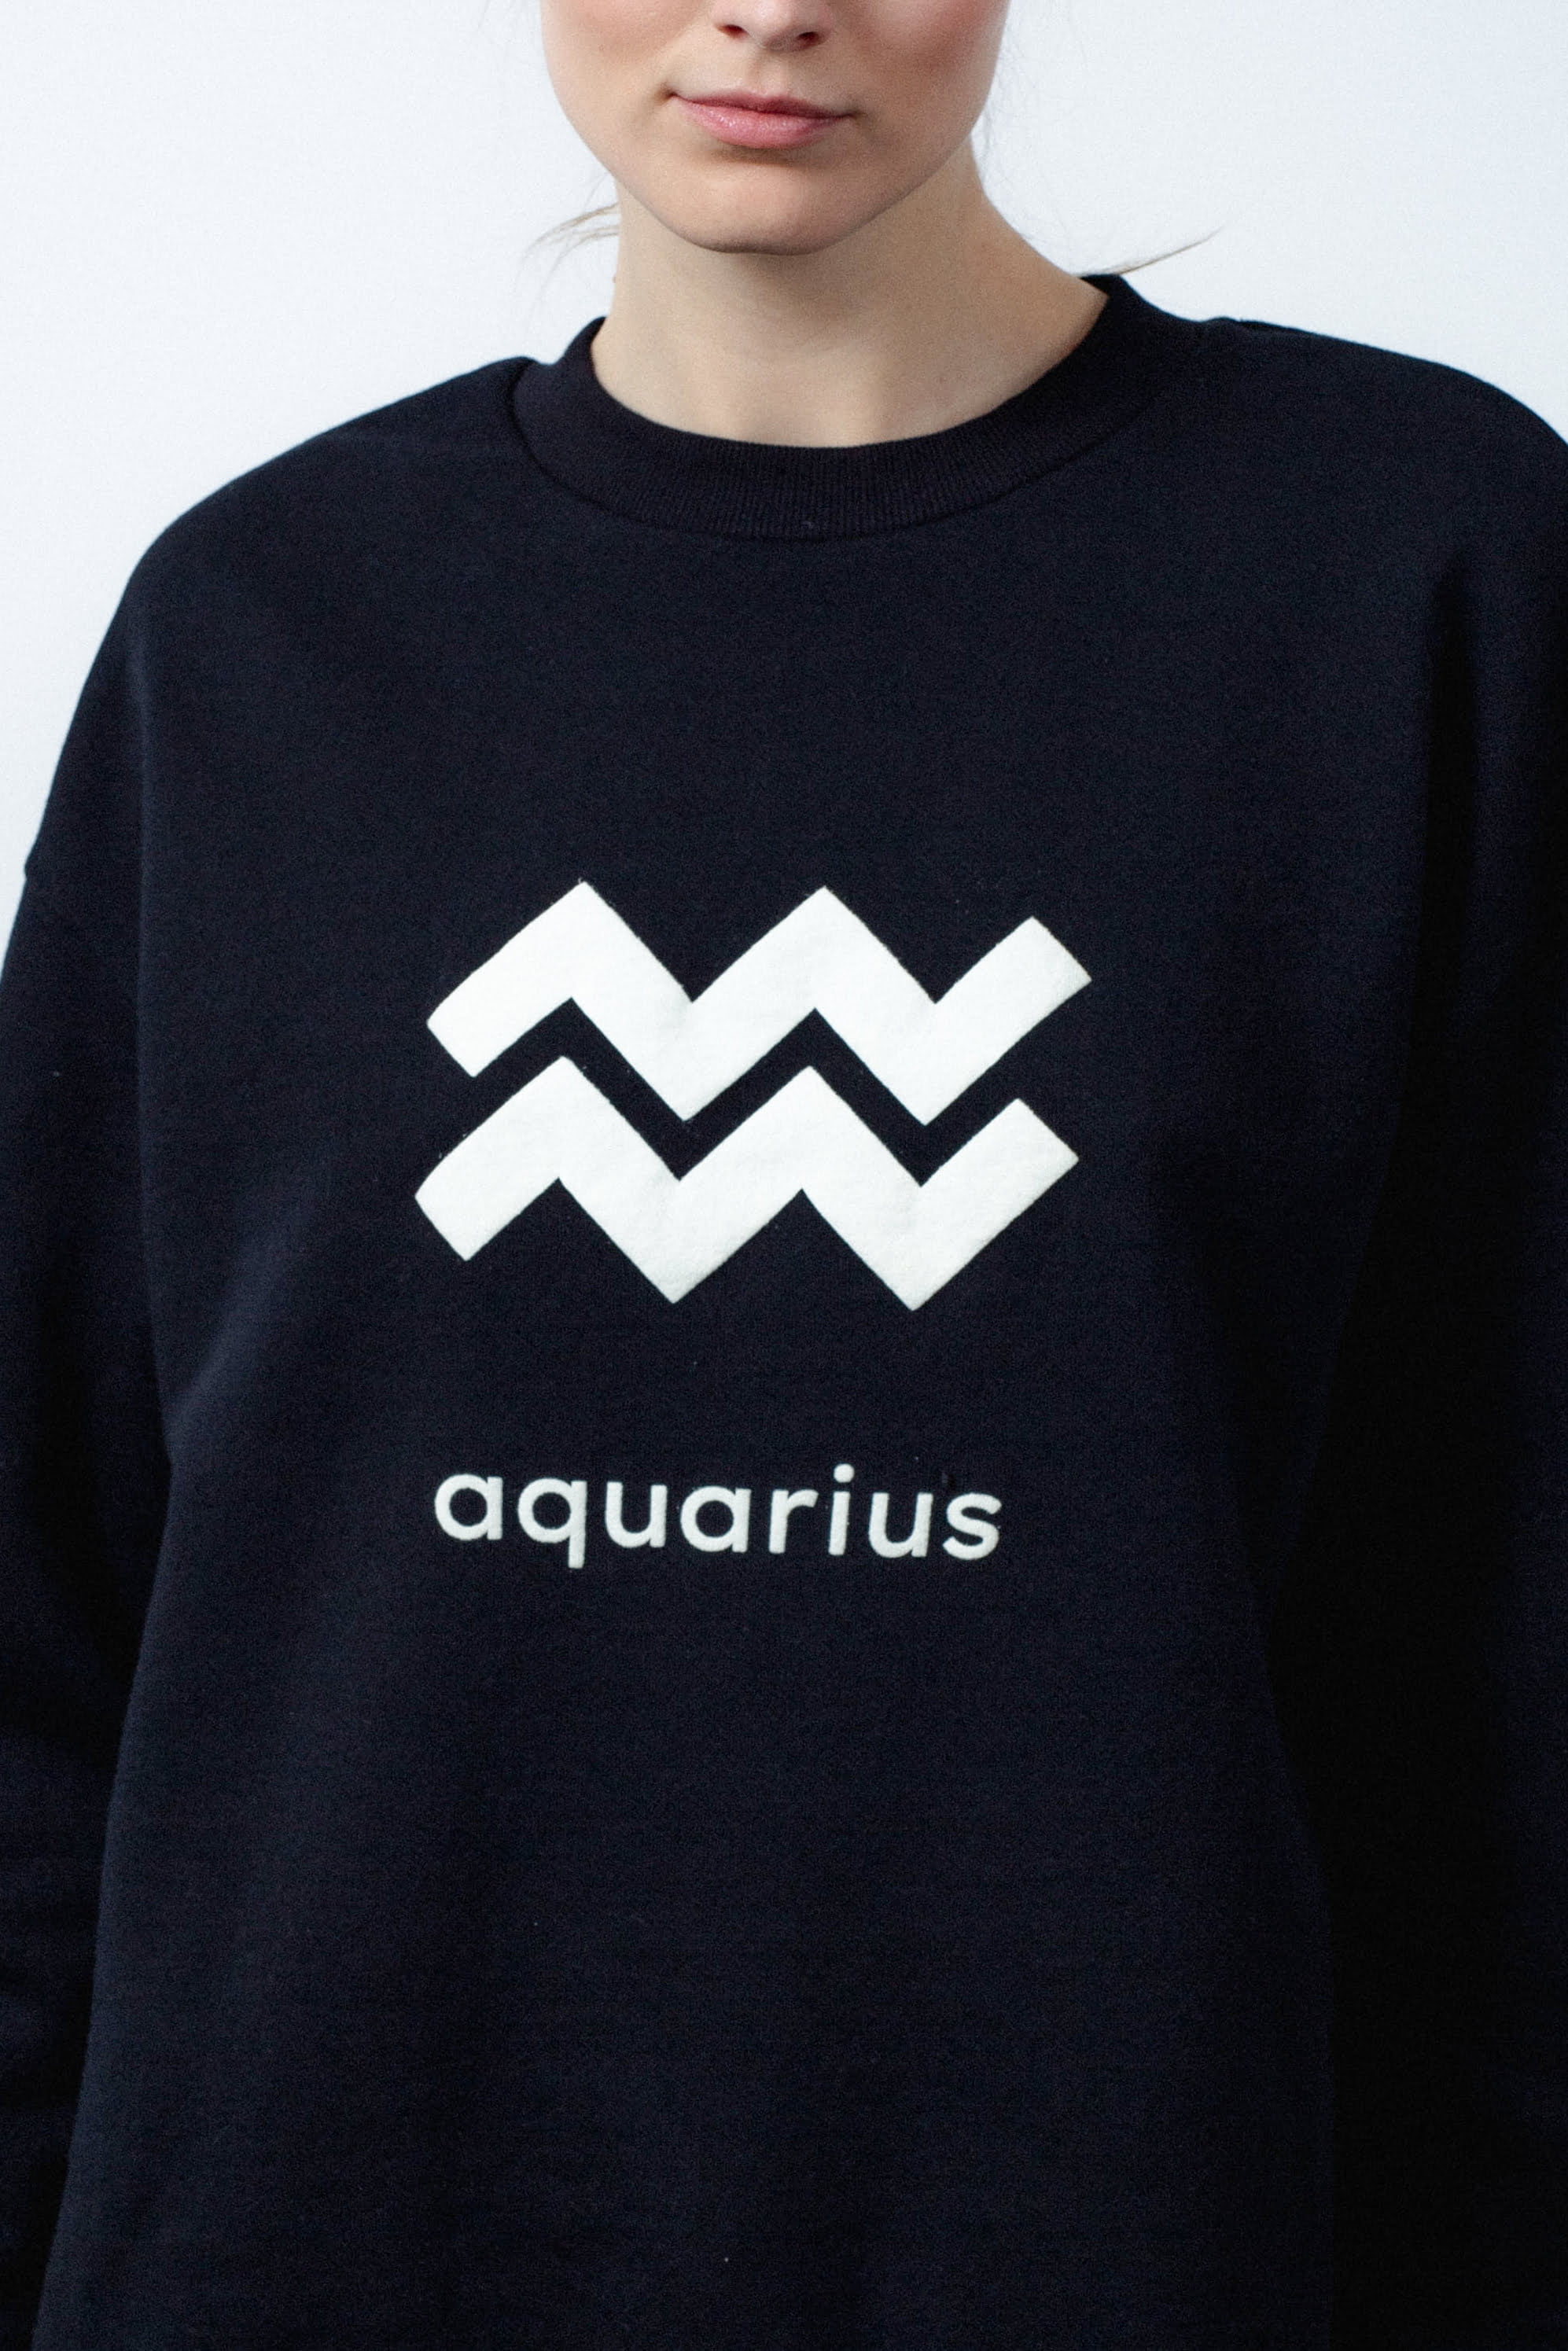 aquarius sweater